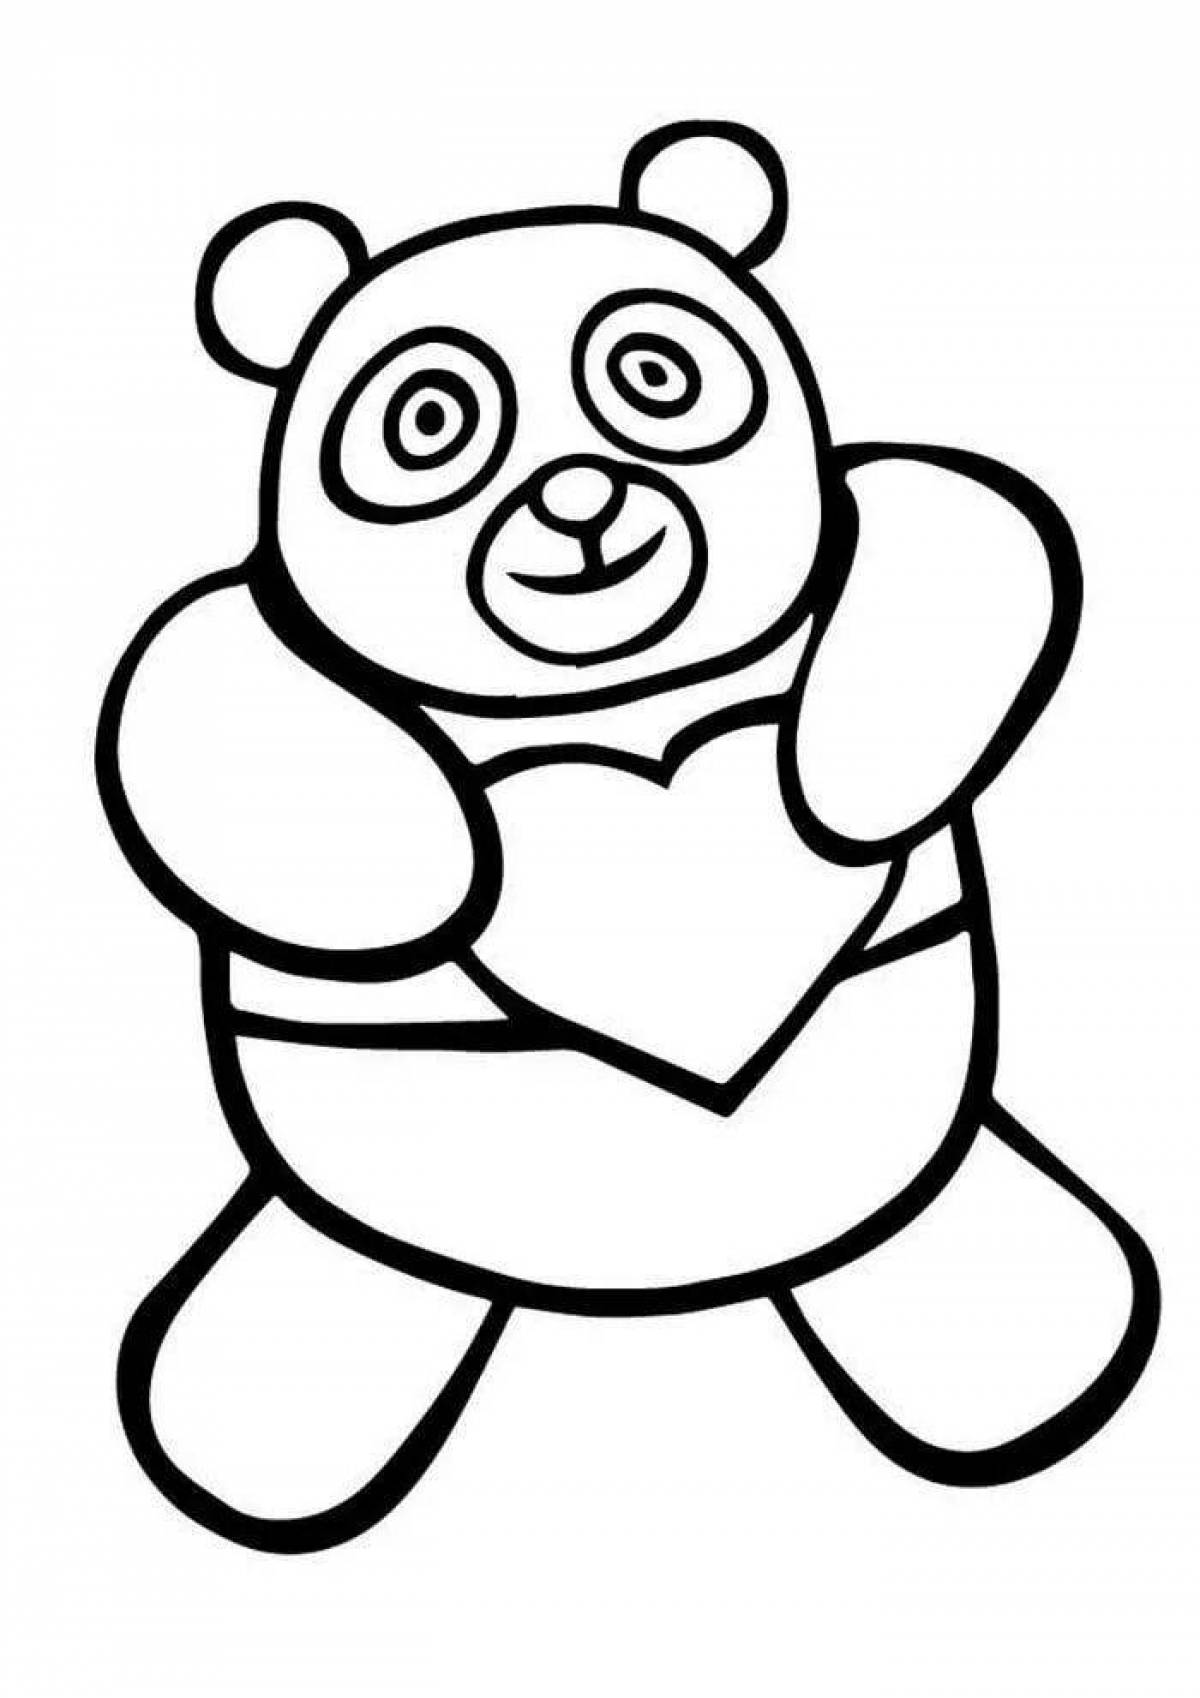 A fun panda coloring book for kids